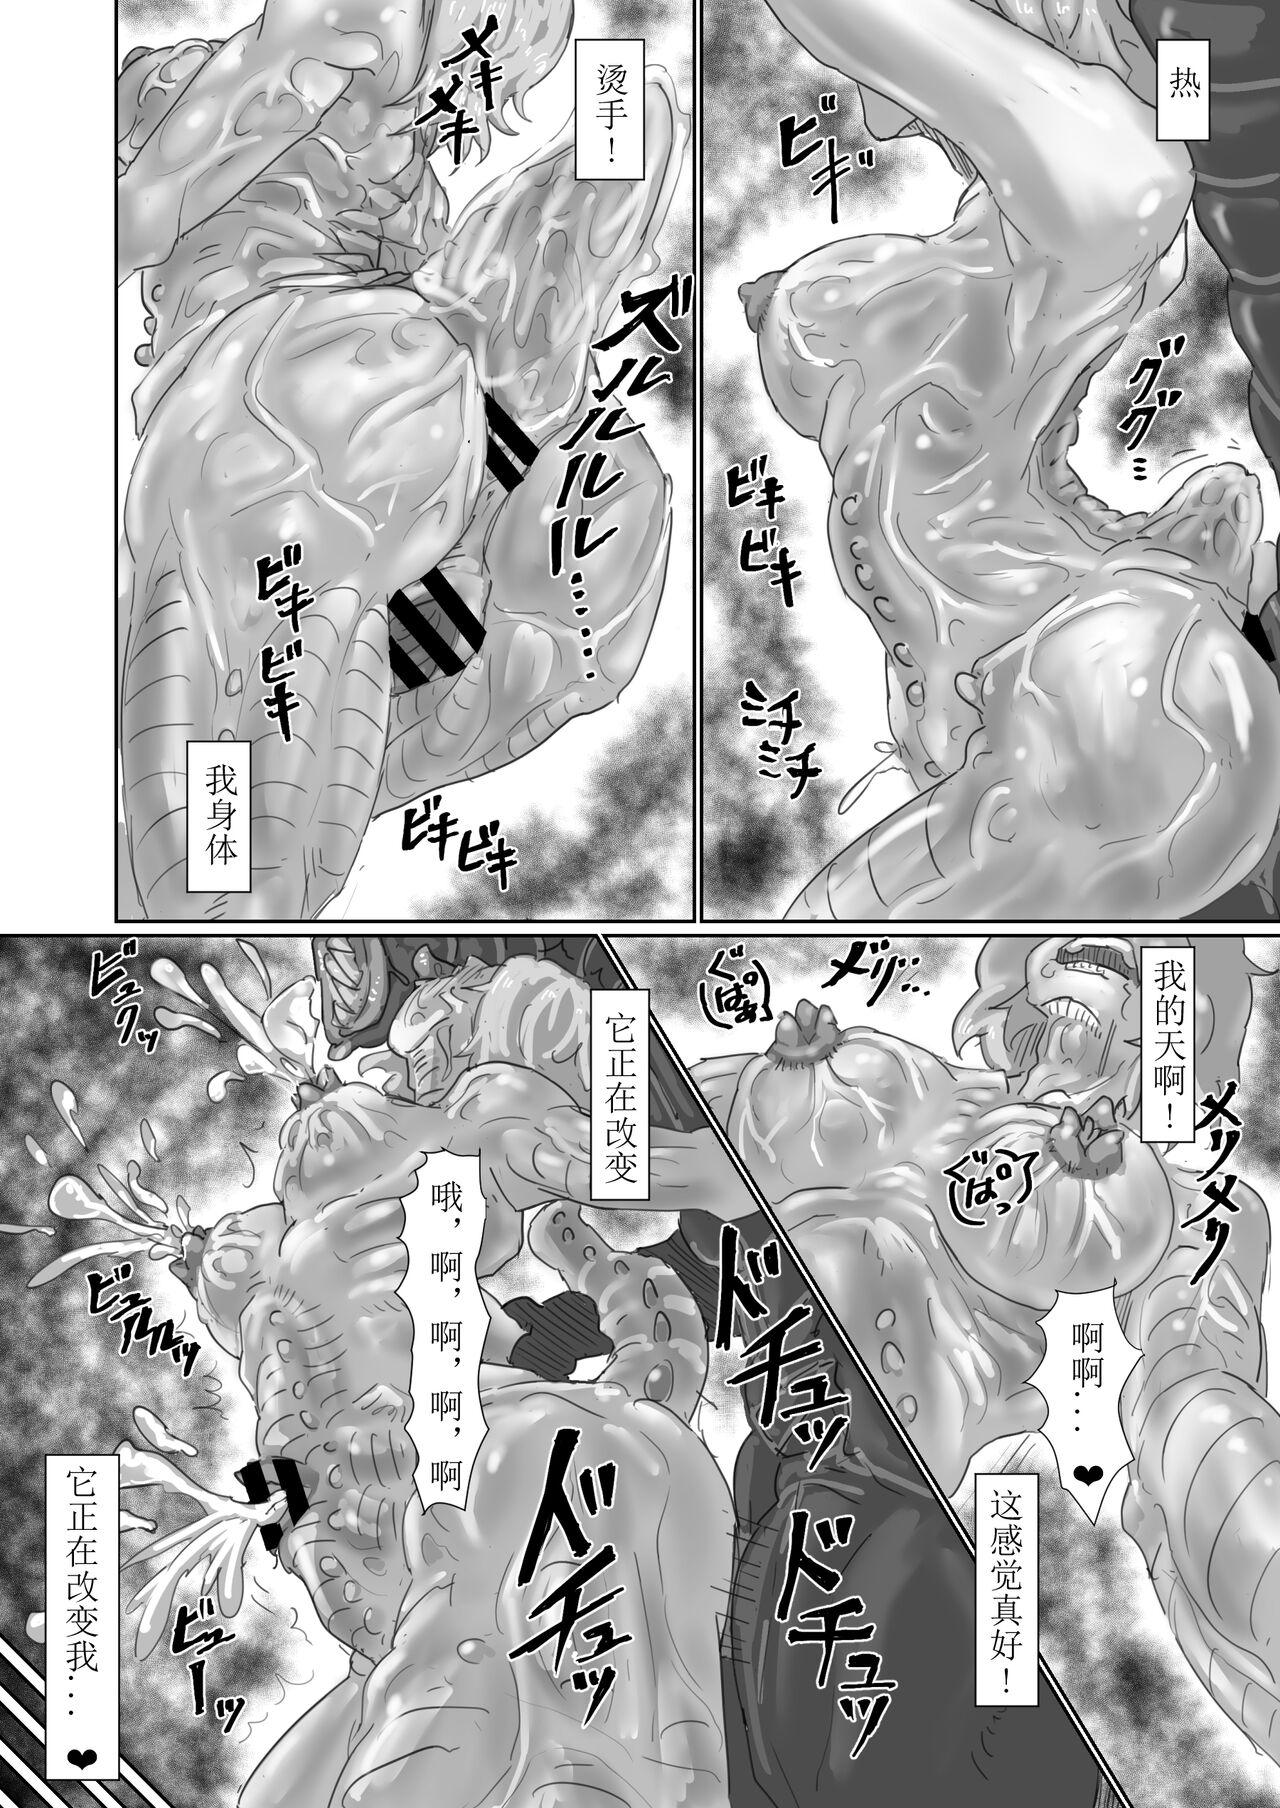 Kisei sa rete Hna eirian ni sa re chau musume no hanashi Alien's Egg 「Abandoned ship」 46